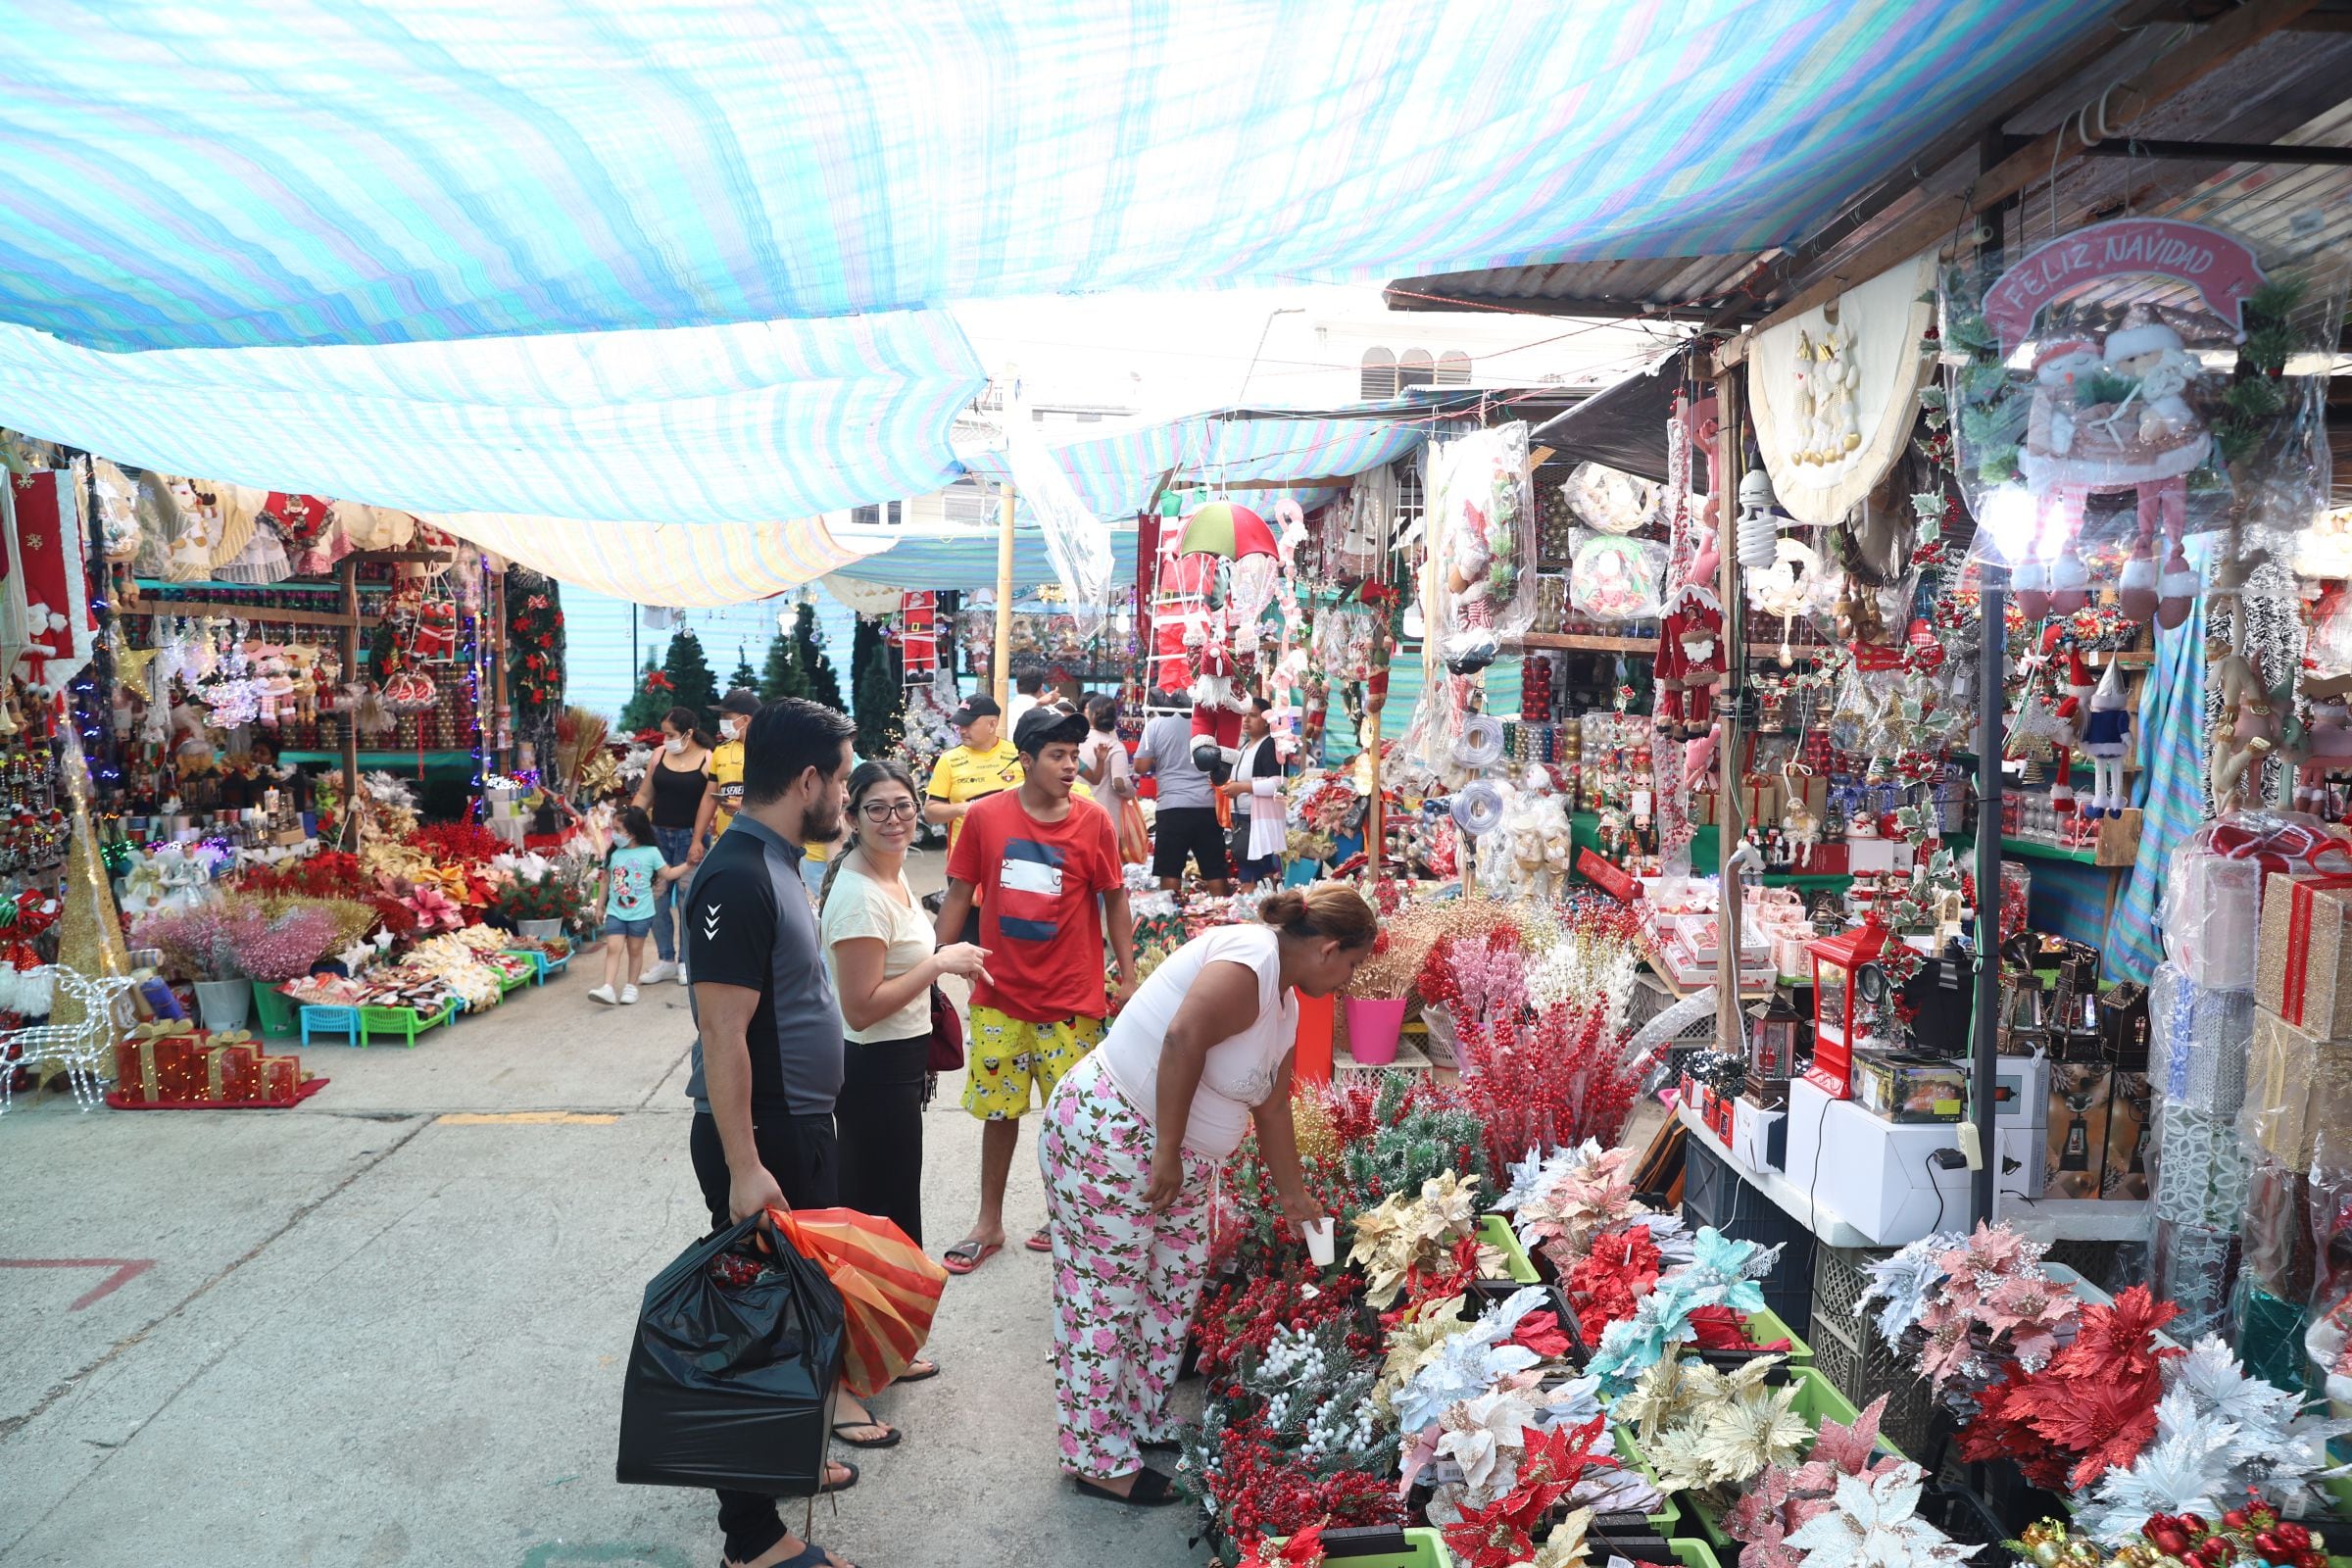 Artículos con precios desde $ 1 se ofertan en feria navideña que reúne a 50  comerciantes en sector de la Alborada, Comunidad, Guayaquil